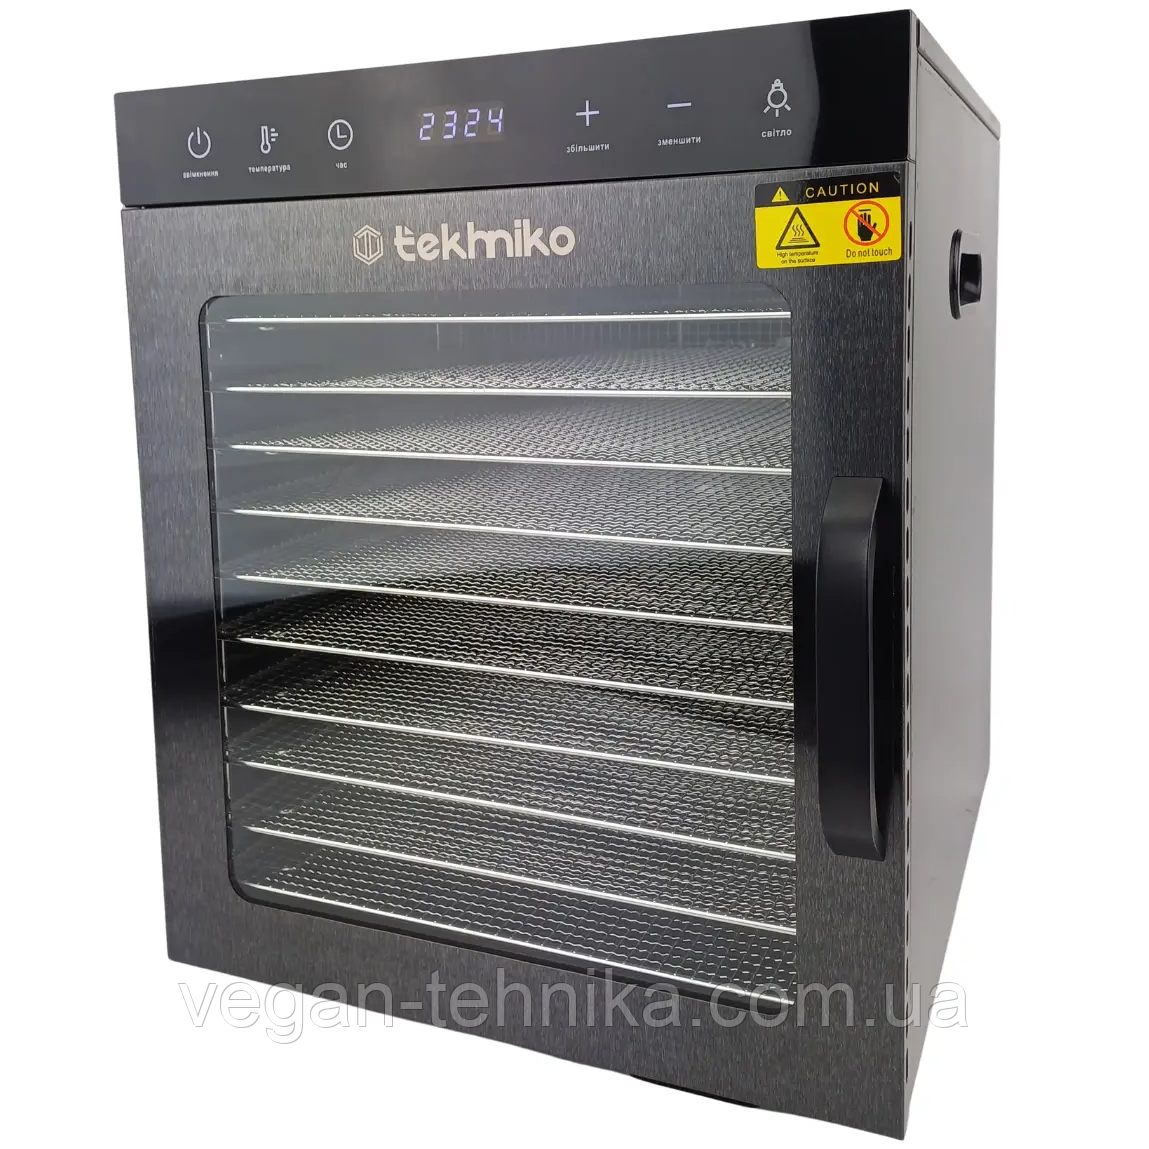 Професійний дегідратор Tekhniko DH-10H-BK Food Dehydrator (10 сталевих лотків)